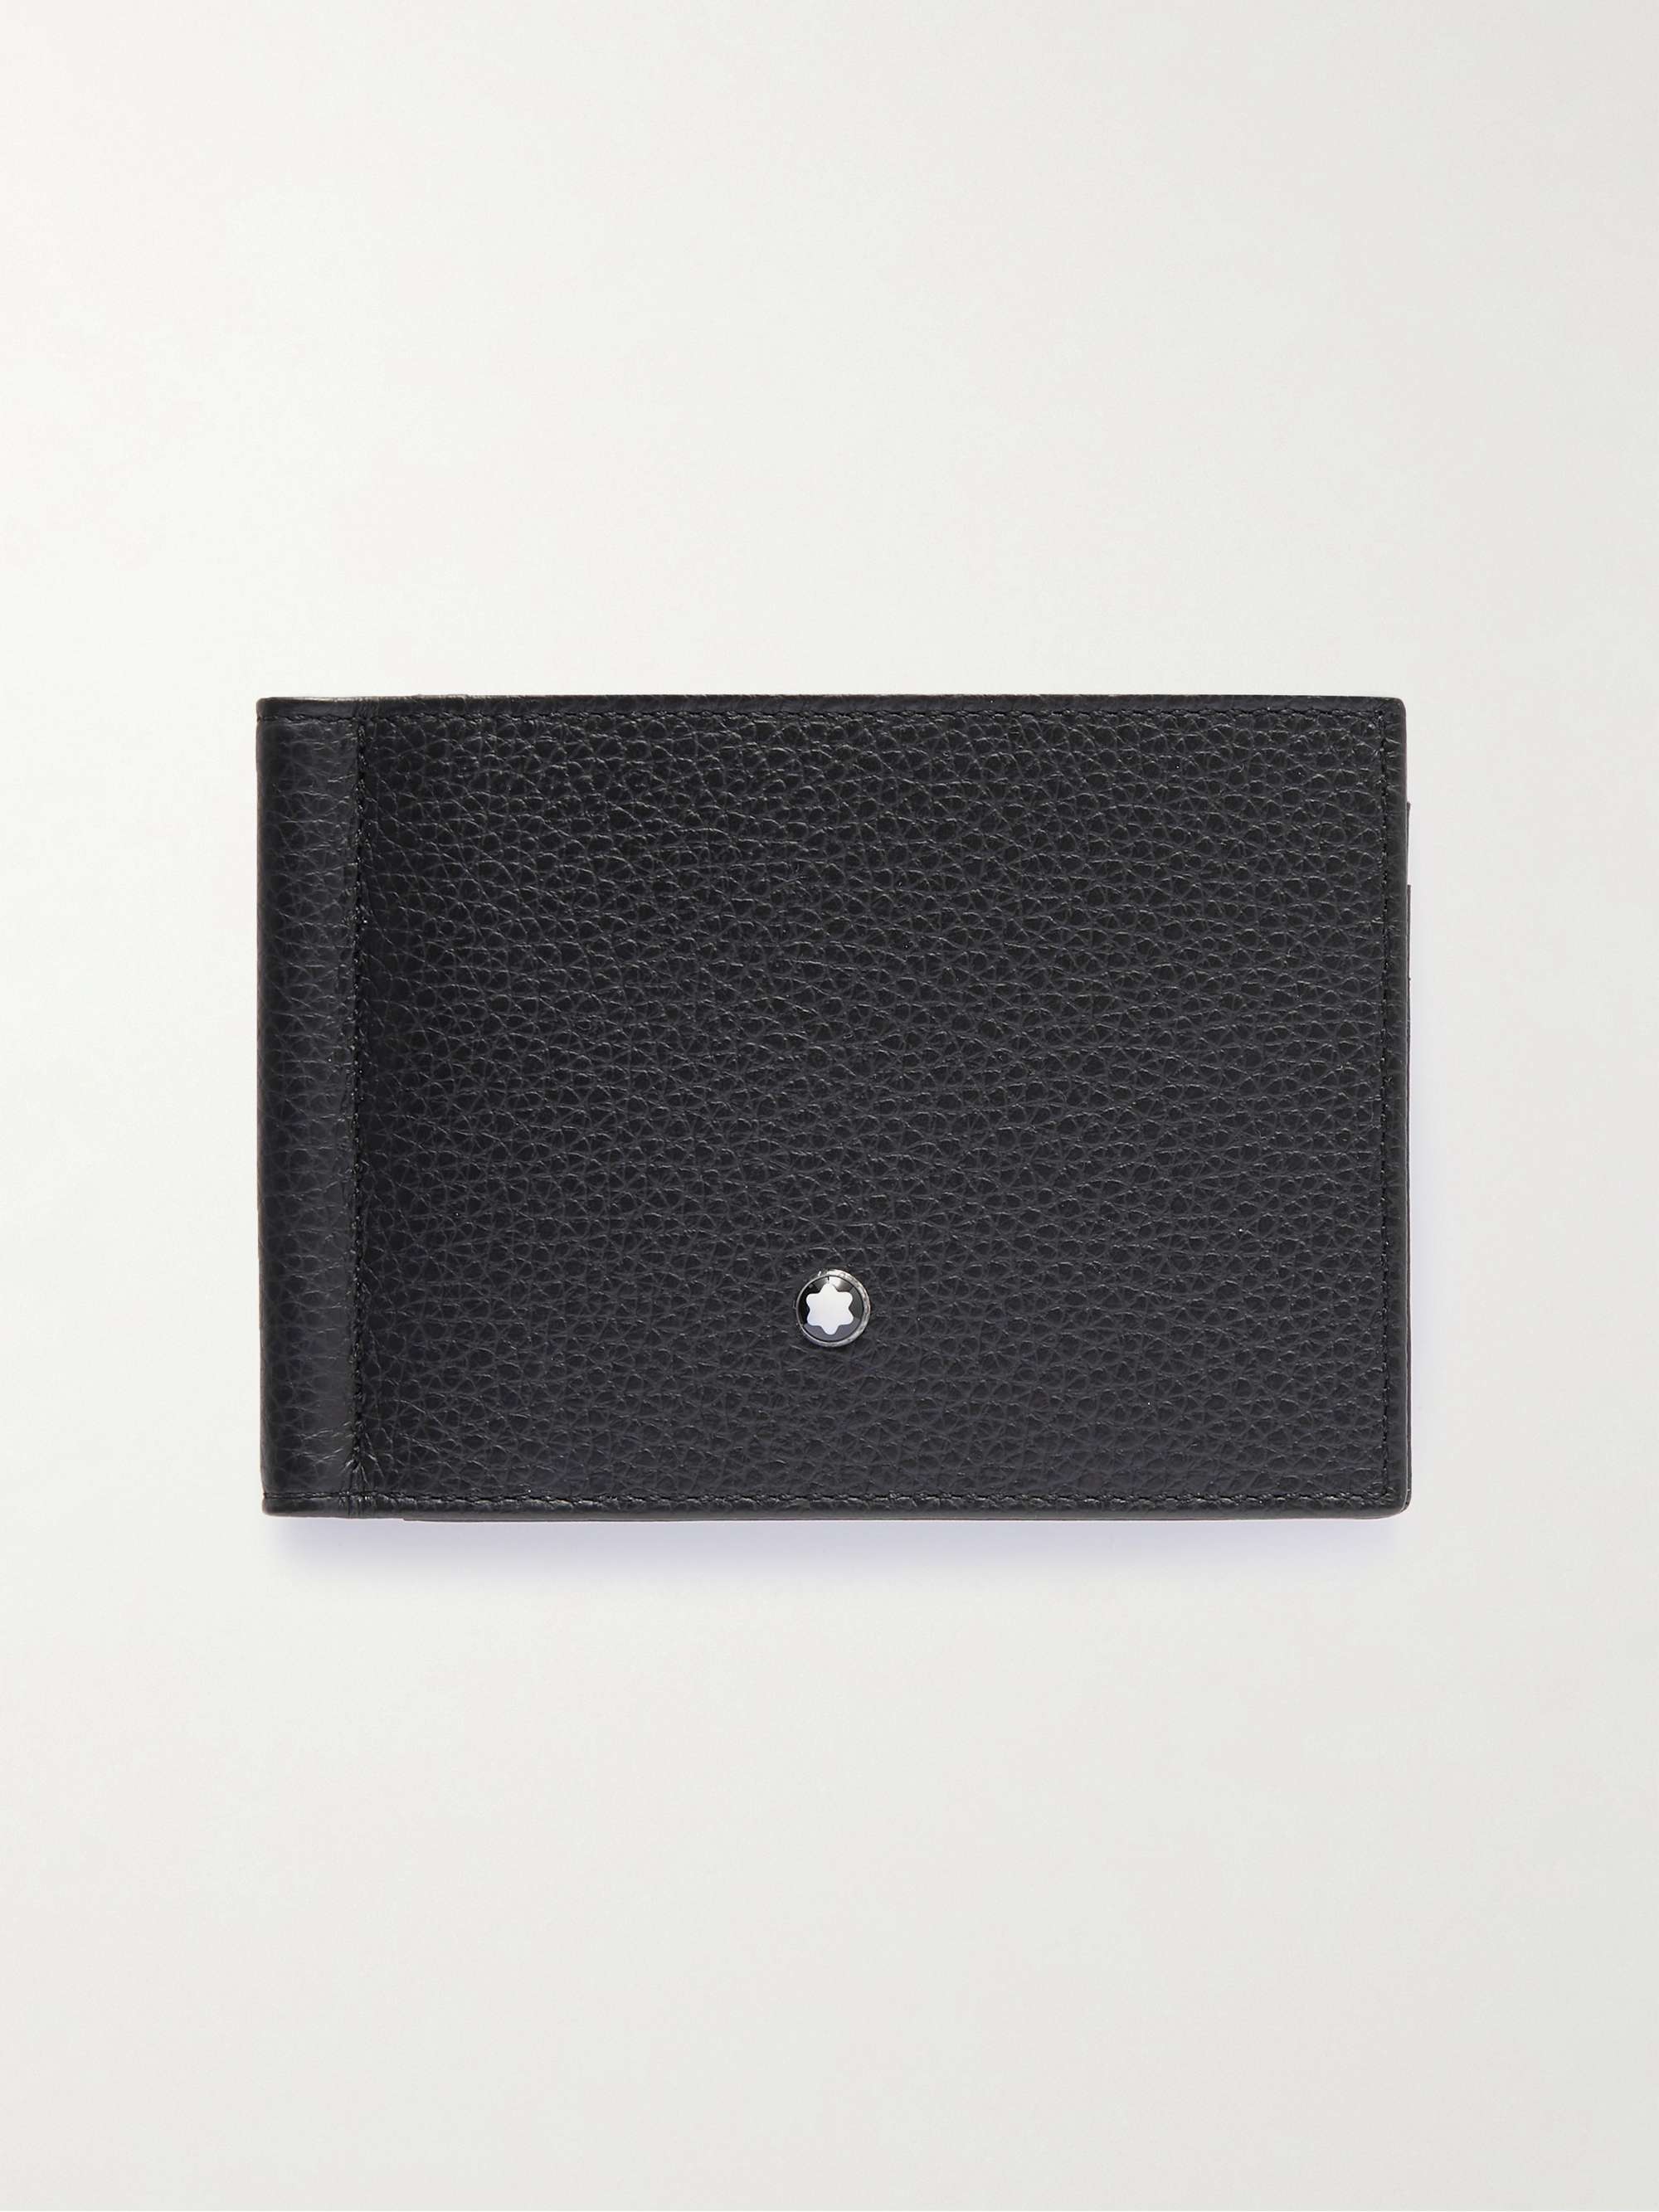 몽블랑 Montblanc Meisterstueck Full-Grain Leather Billfold Wallet with Money Clip,Black